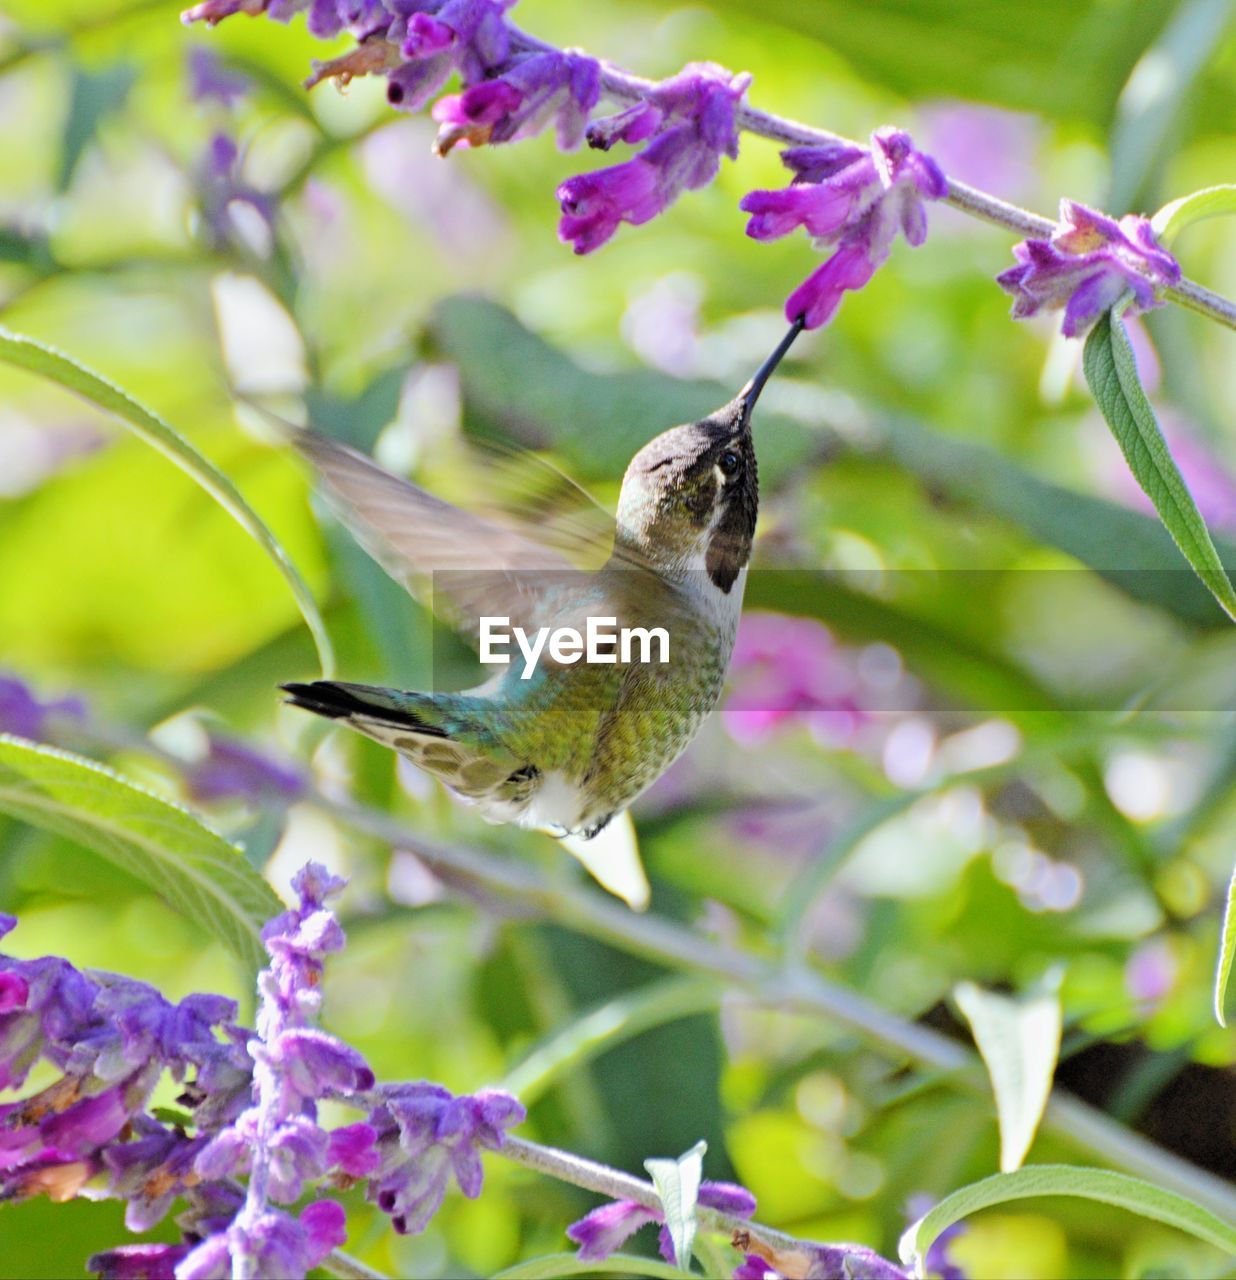 Hummingbird eating from a velvet flour